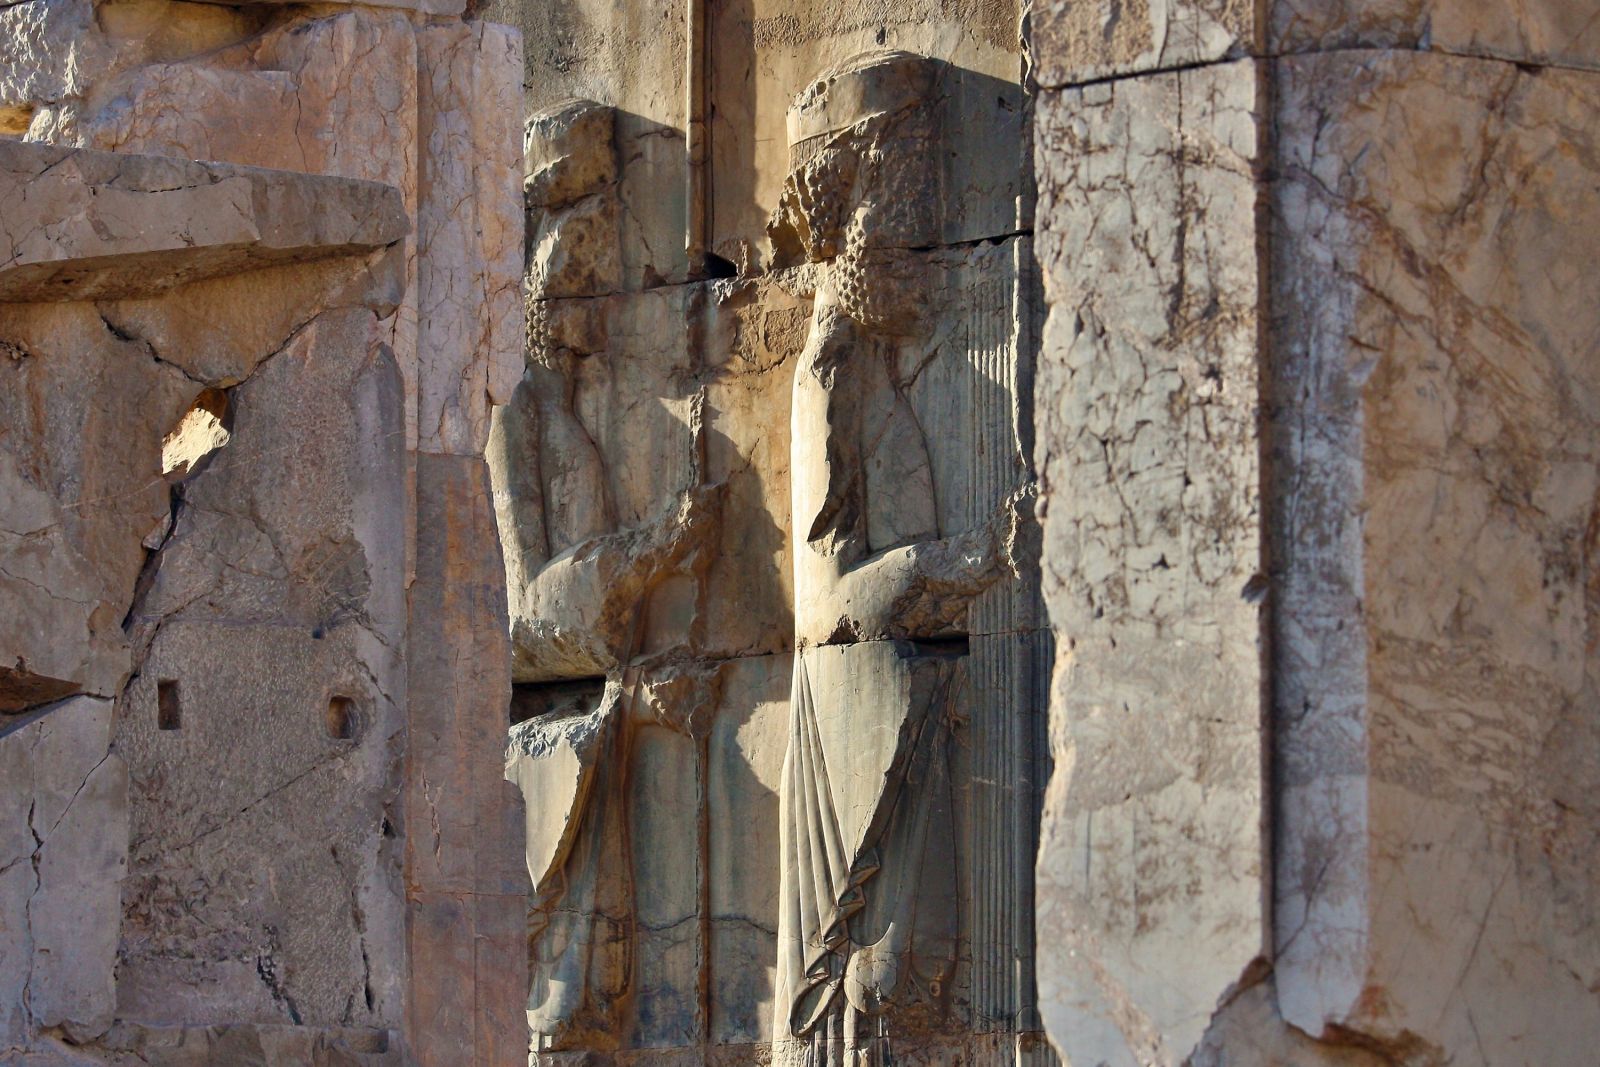 Rundgang in Persepolis